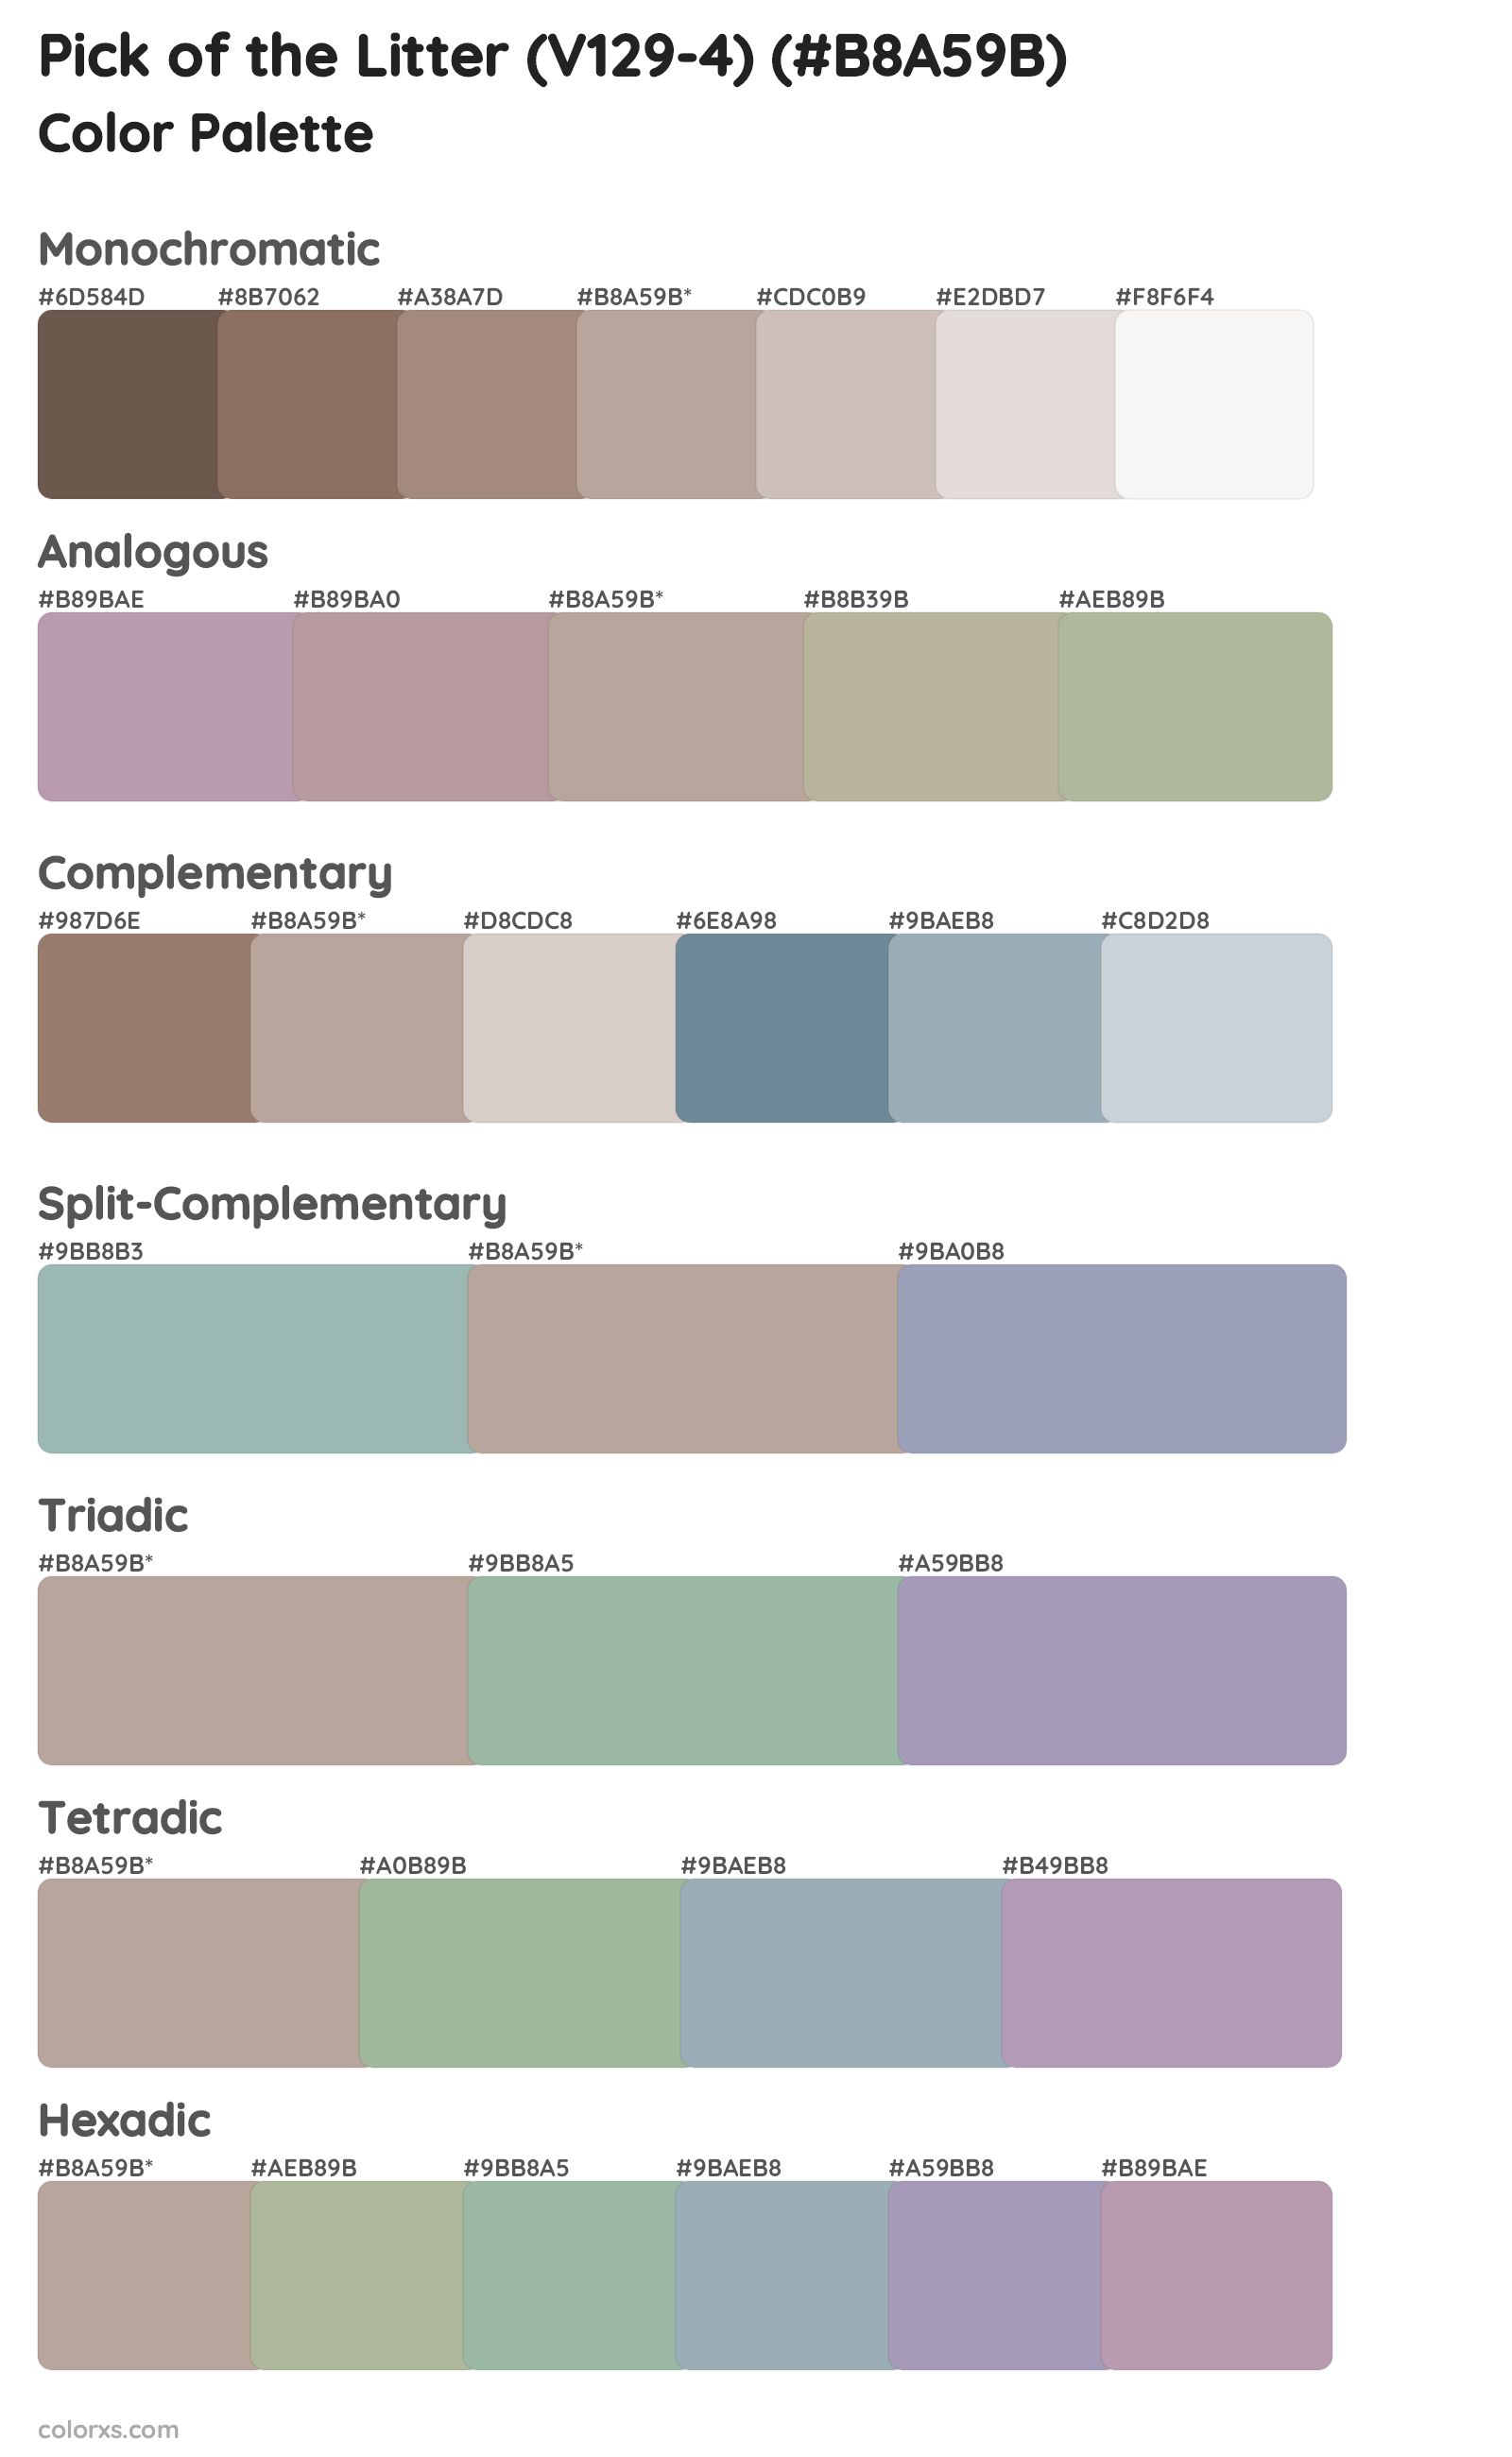 Pick of the Litter (V129-4) Color Scheme Palettes